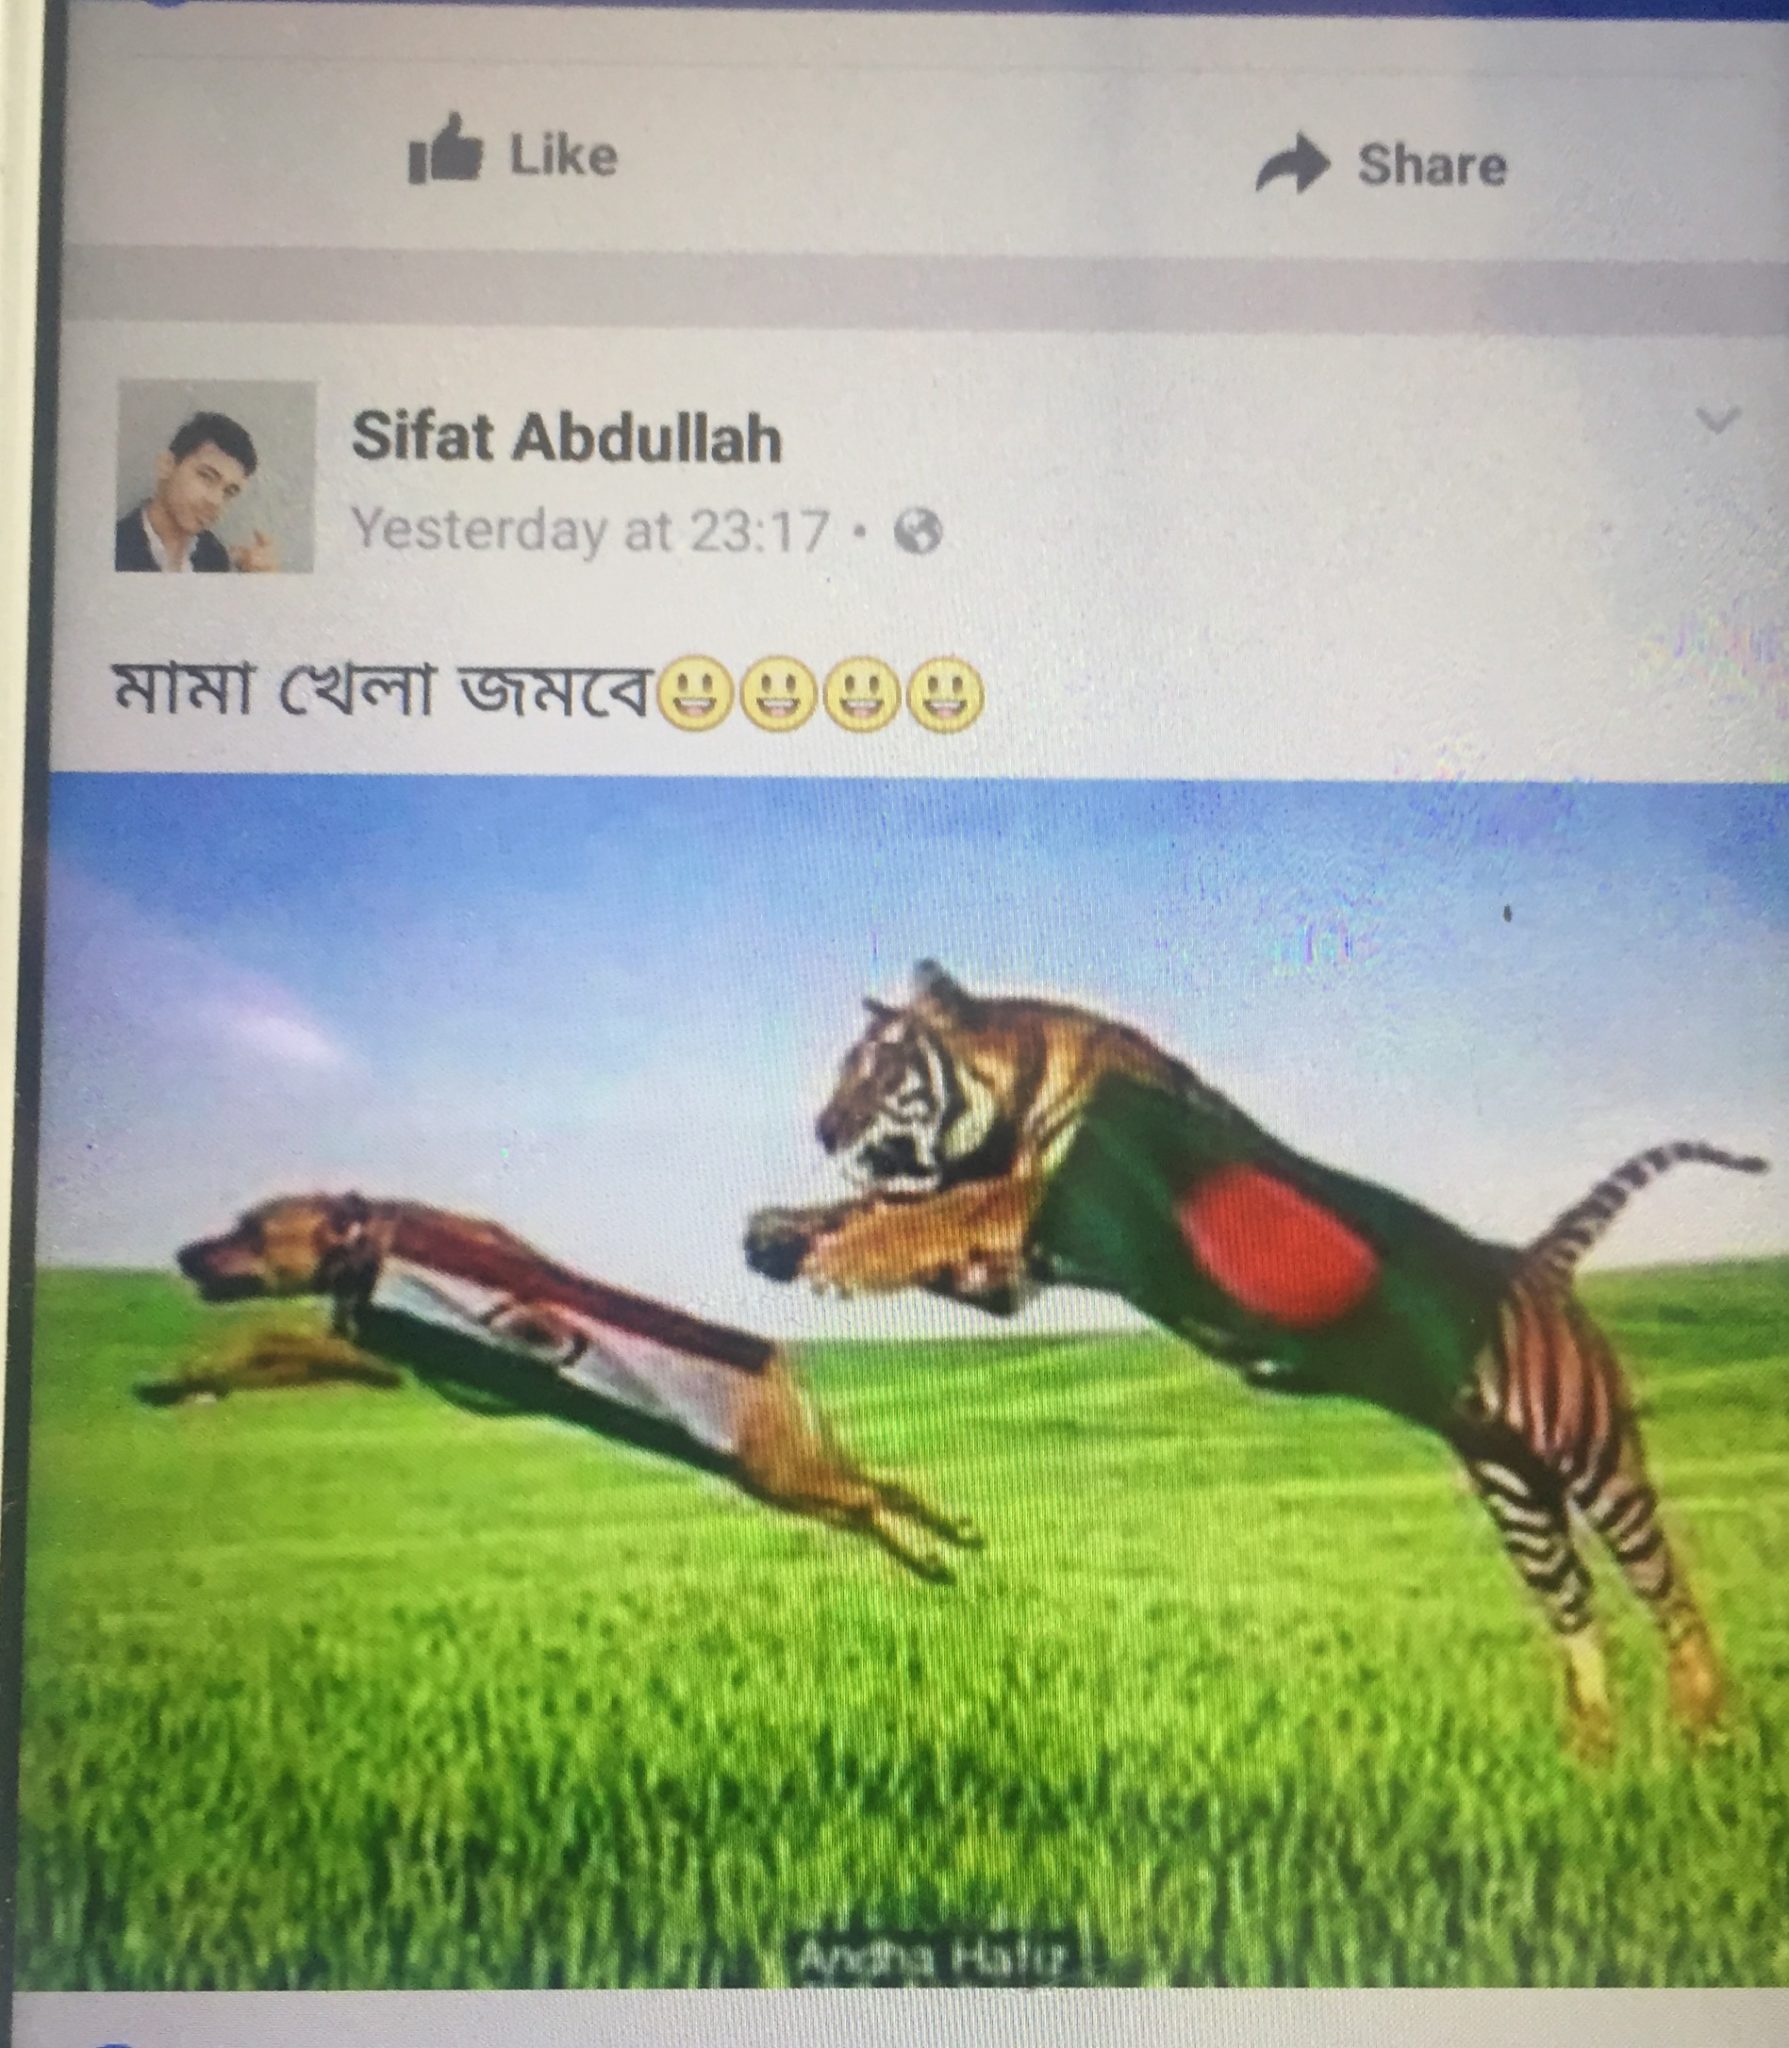 सेमी फाइनल मुकाबले से पहले एक बार फिर बांग्लादेश की शर्मनाक हरकत जारी, धोनी के बाद अब कर रहे है तिरंगे का अपमान 4